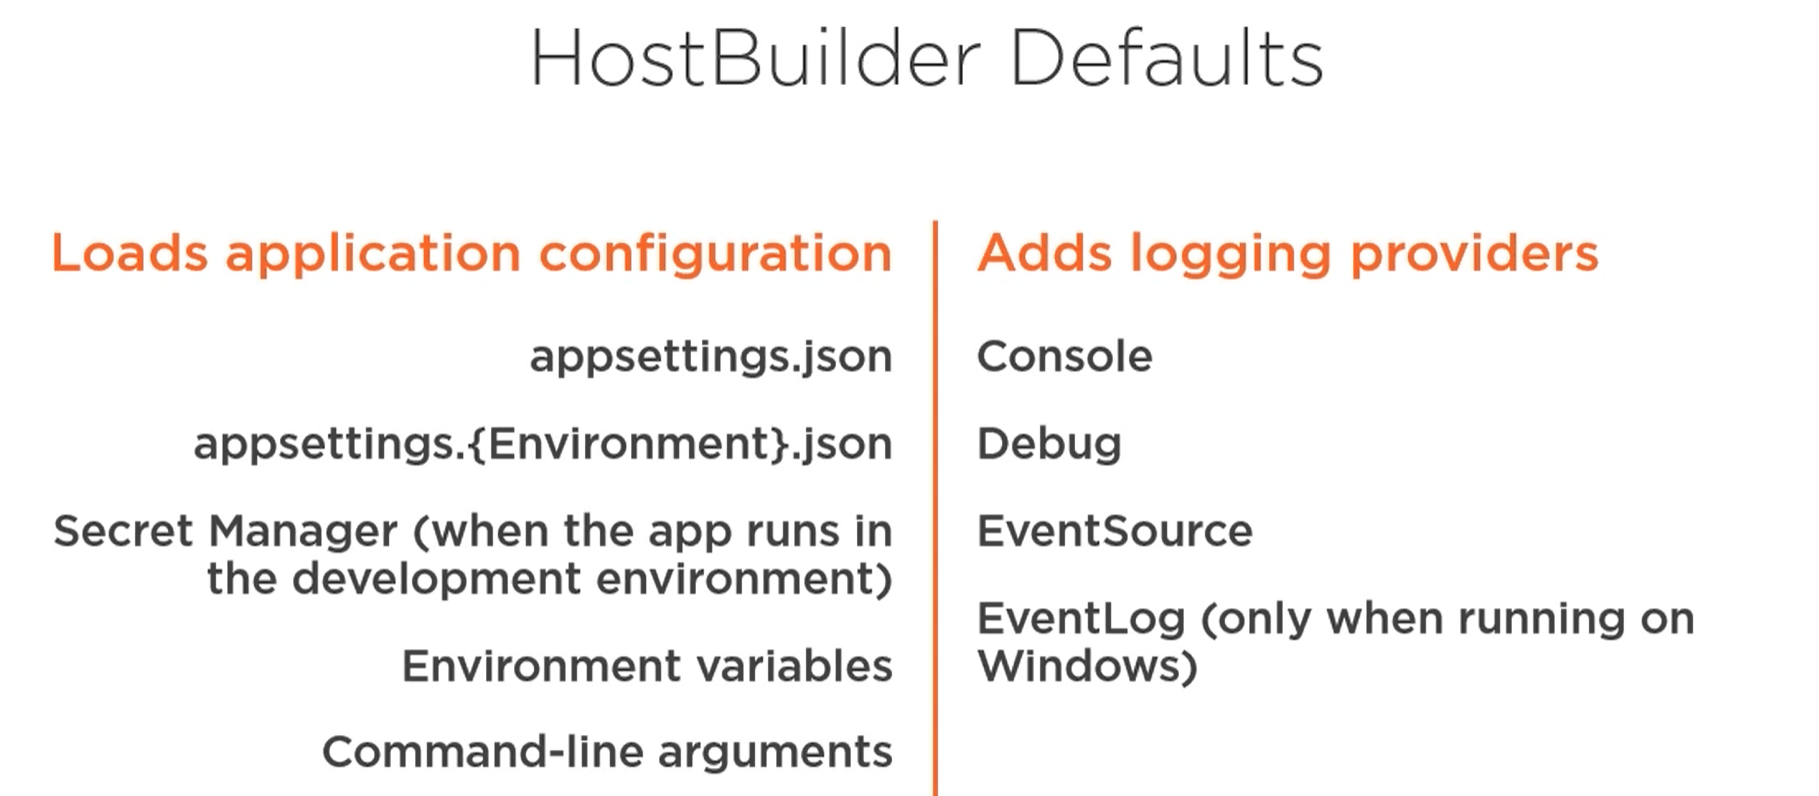 HostBuilder Defaults